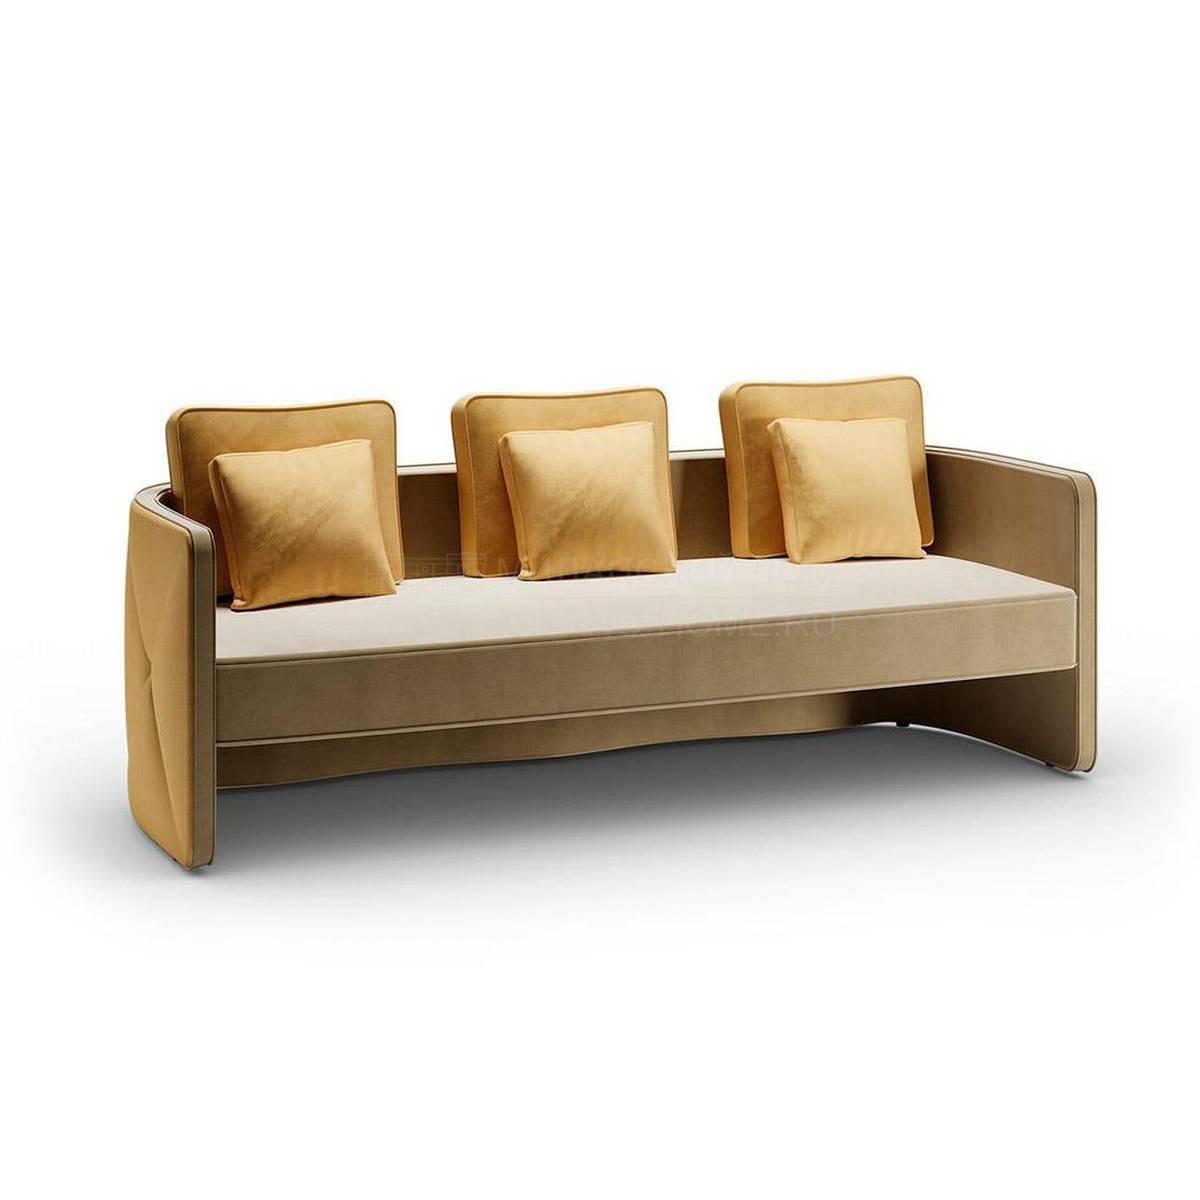 Прямой диван Aura sofa из Италии фабрики REFLEX ANGELO